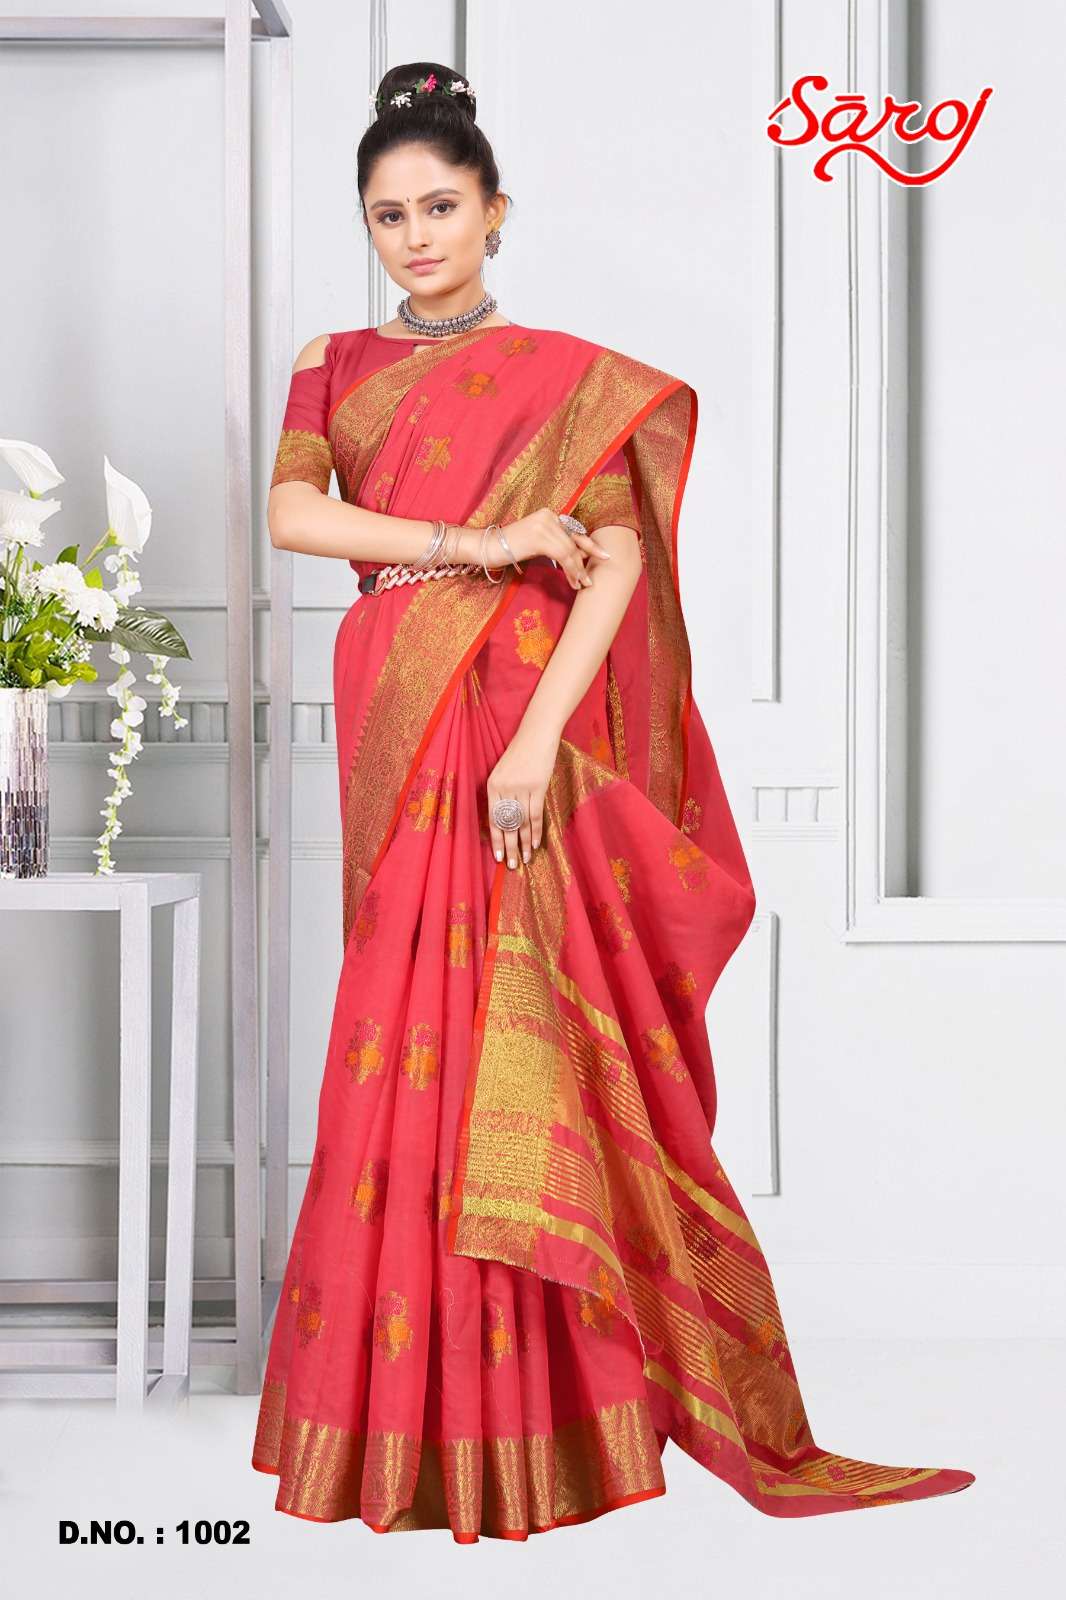 Saroj textile presents Shandaar vol-1 Cotton Designer sarees catalogue